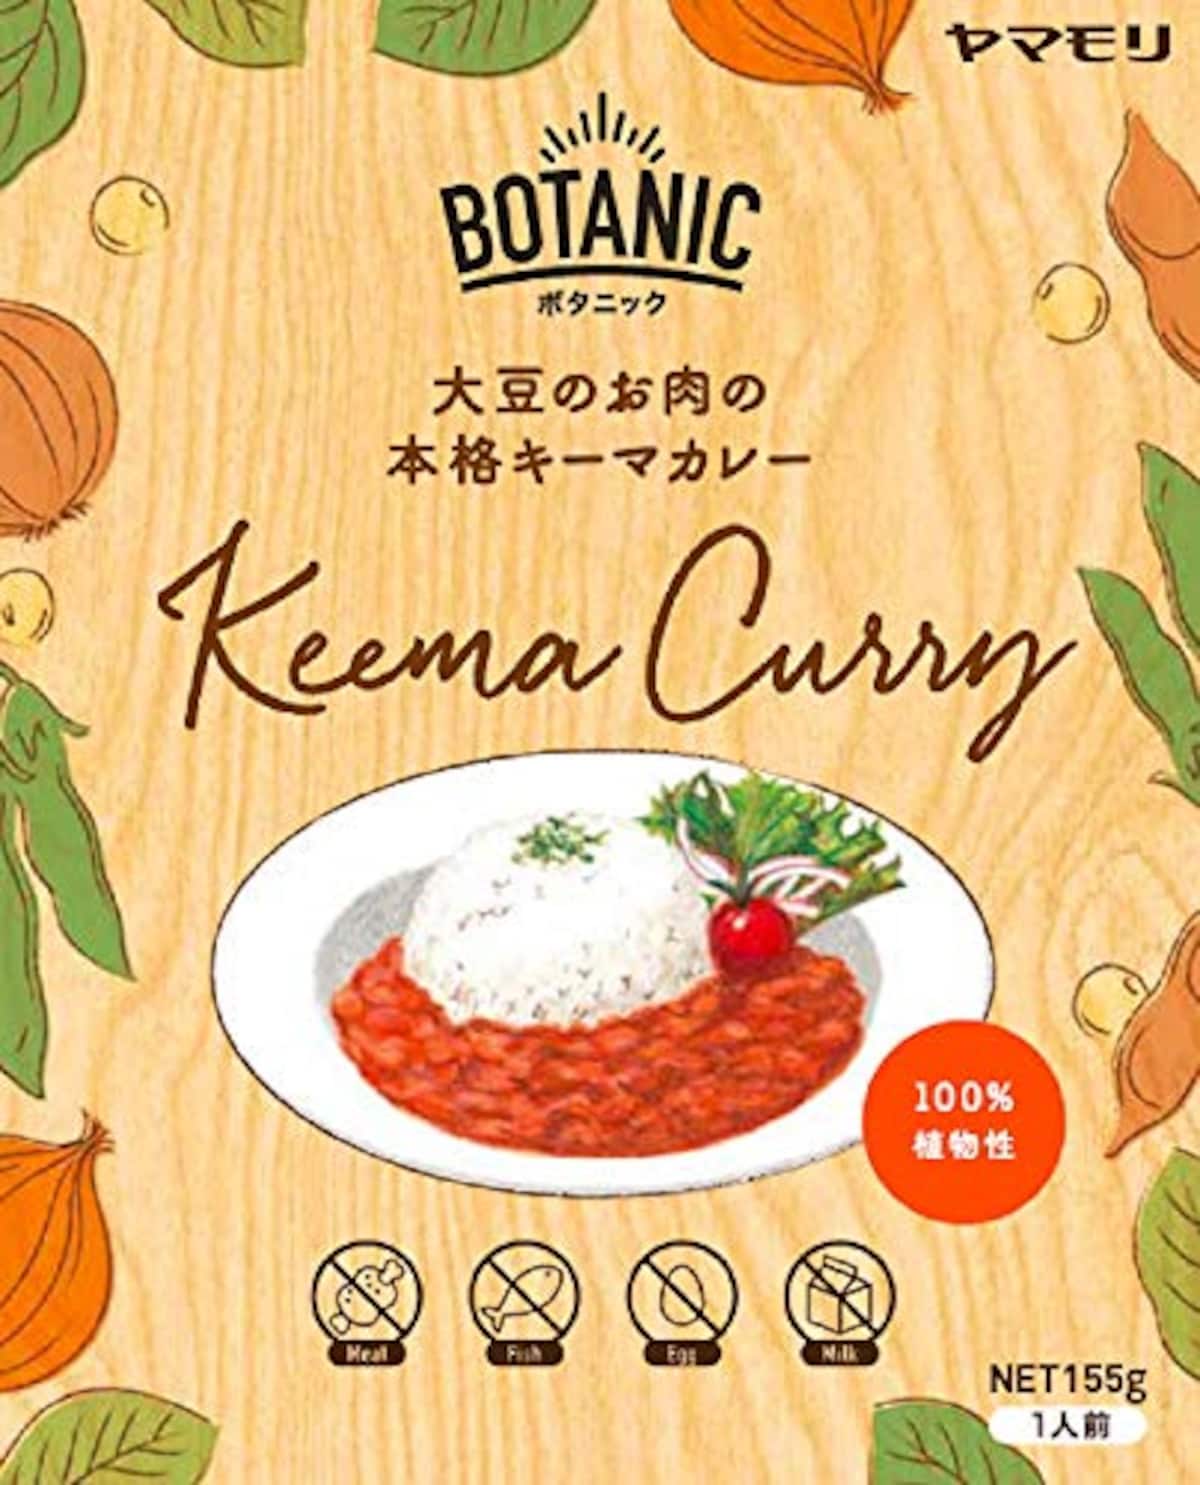 BOTANIC 大豆とお肉の本格キーマカレー